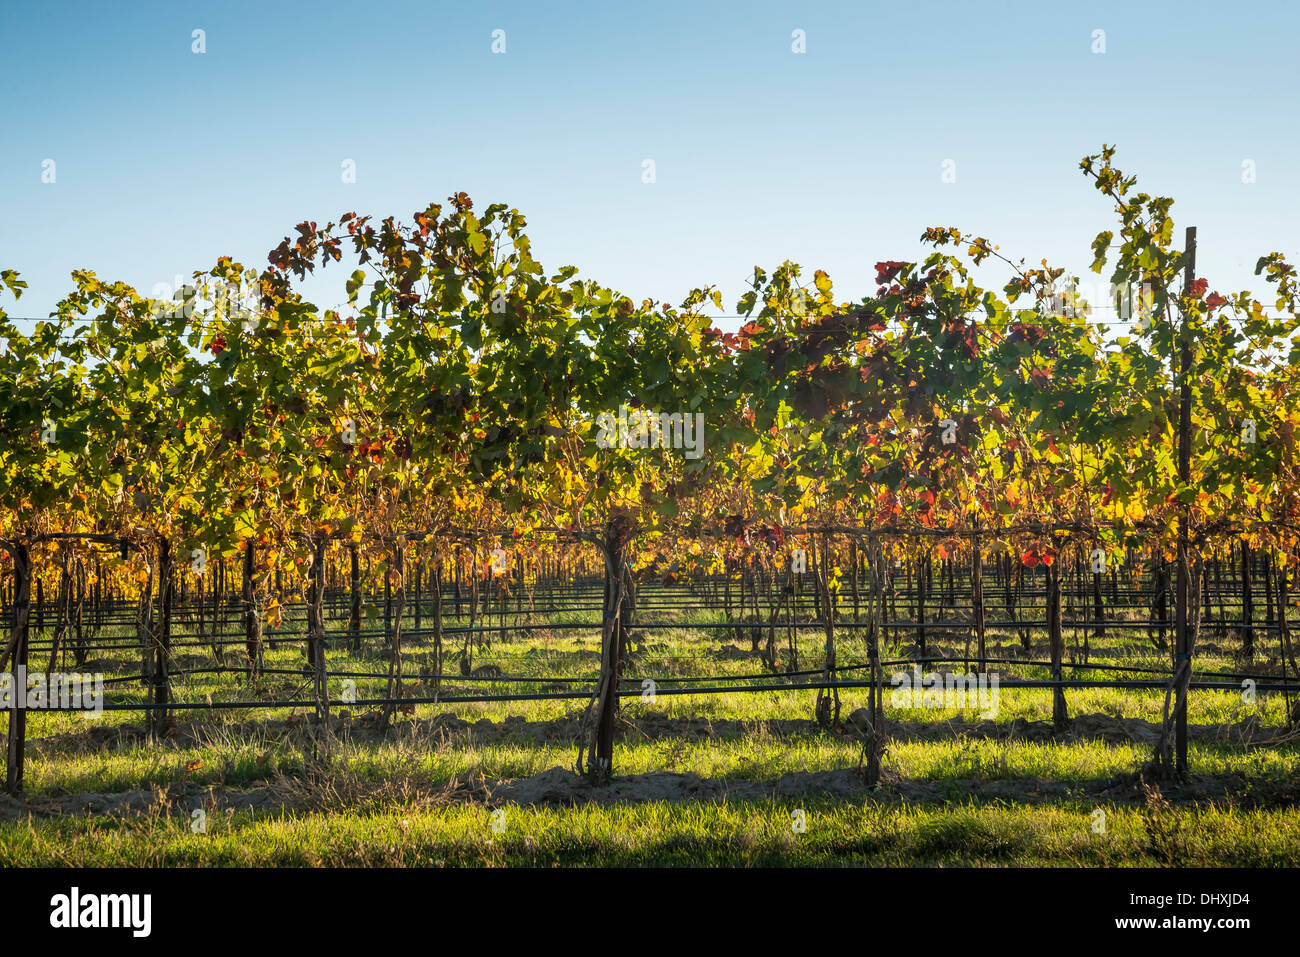 Wine grape vines at Northstar Vineyards, Walla Walla, Washington. Stock Photo